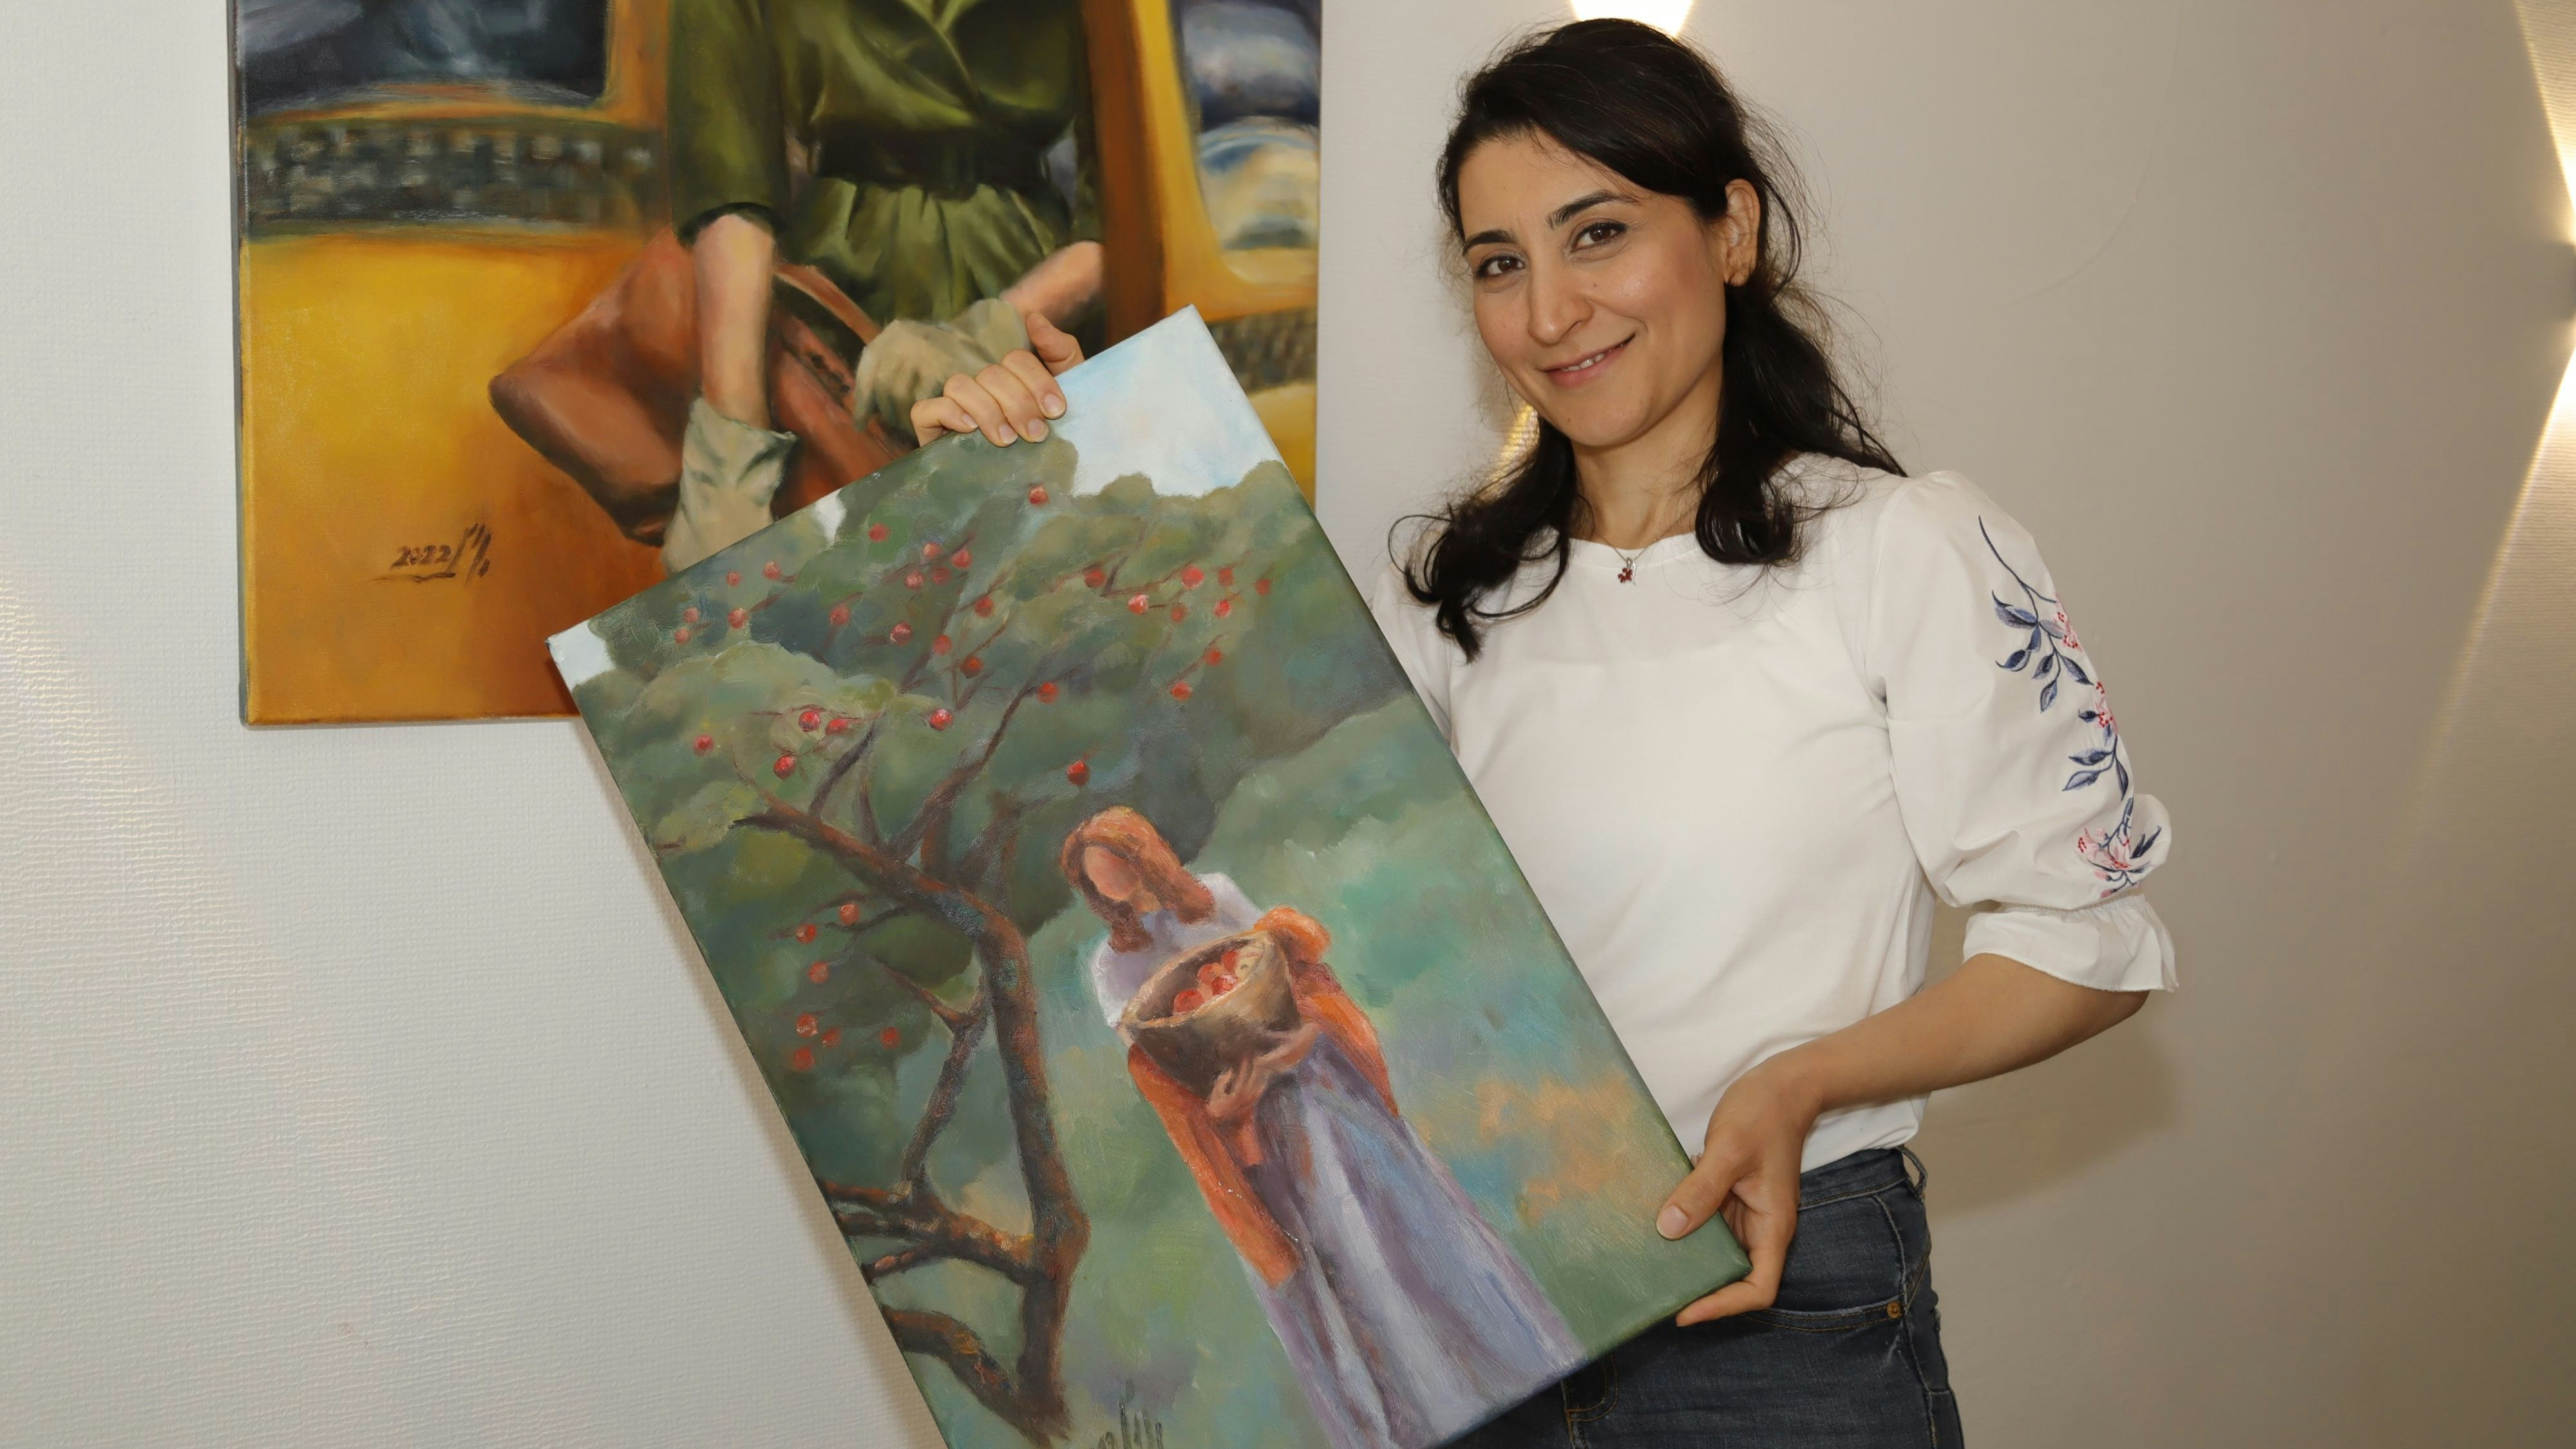 Eröffnung am Samstag: Ihre Werke zeigte Nazanin Etefagh bei einer Ausstellung im Strukeljer Mandehuus. Foto: C. Passmann